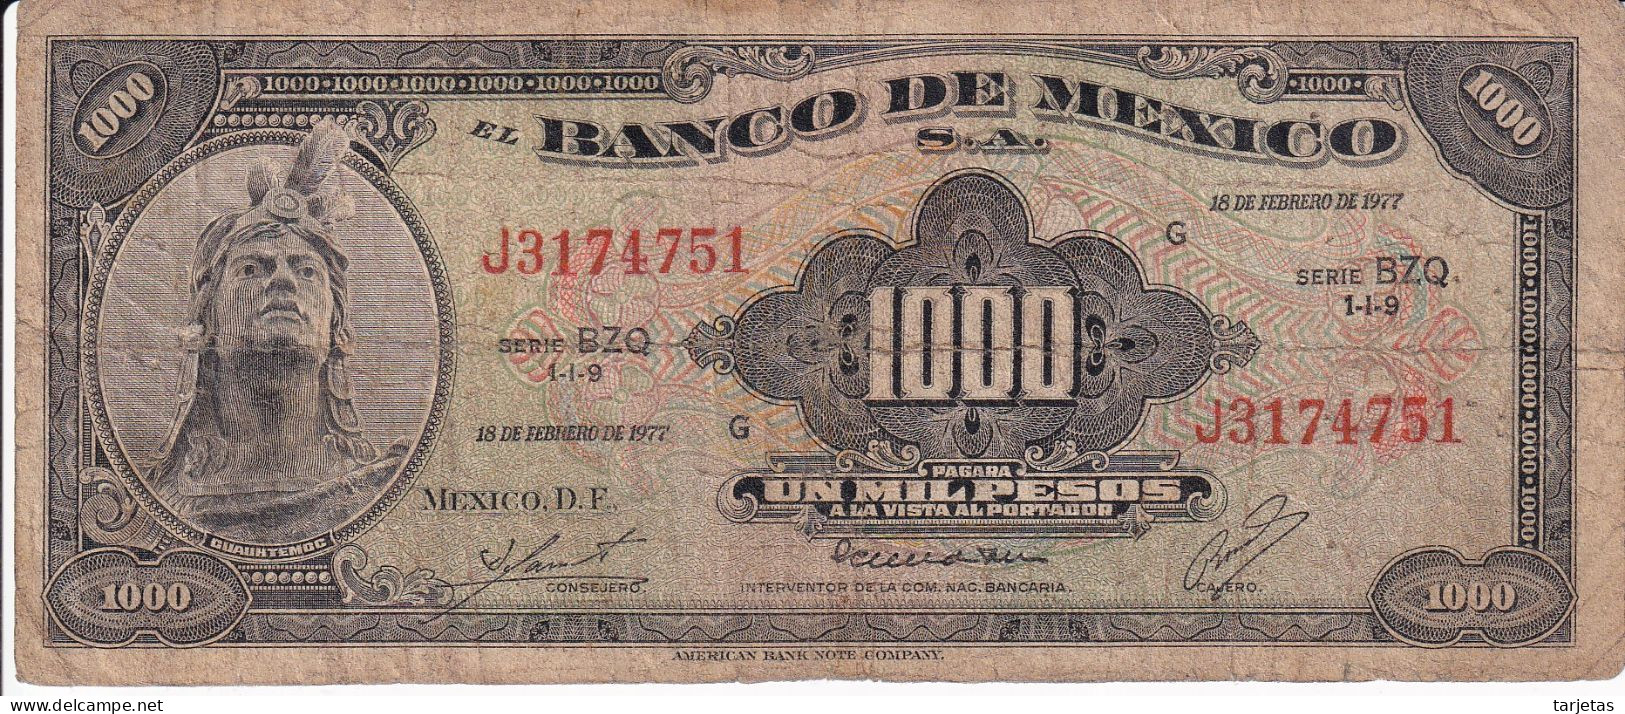 BILLETE DE MEXICO DE 1000 PESOS DEL 18 DE FEBRERO DE 1977 DIFERENTES FIRMAS (BANKNOTE) - Mexique